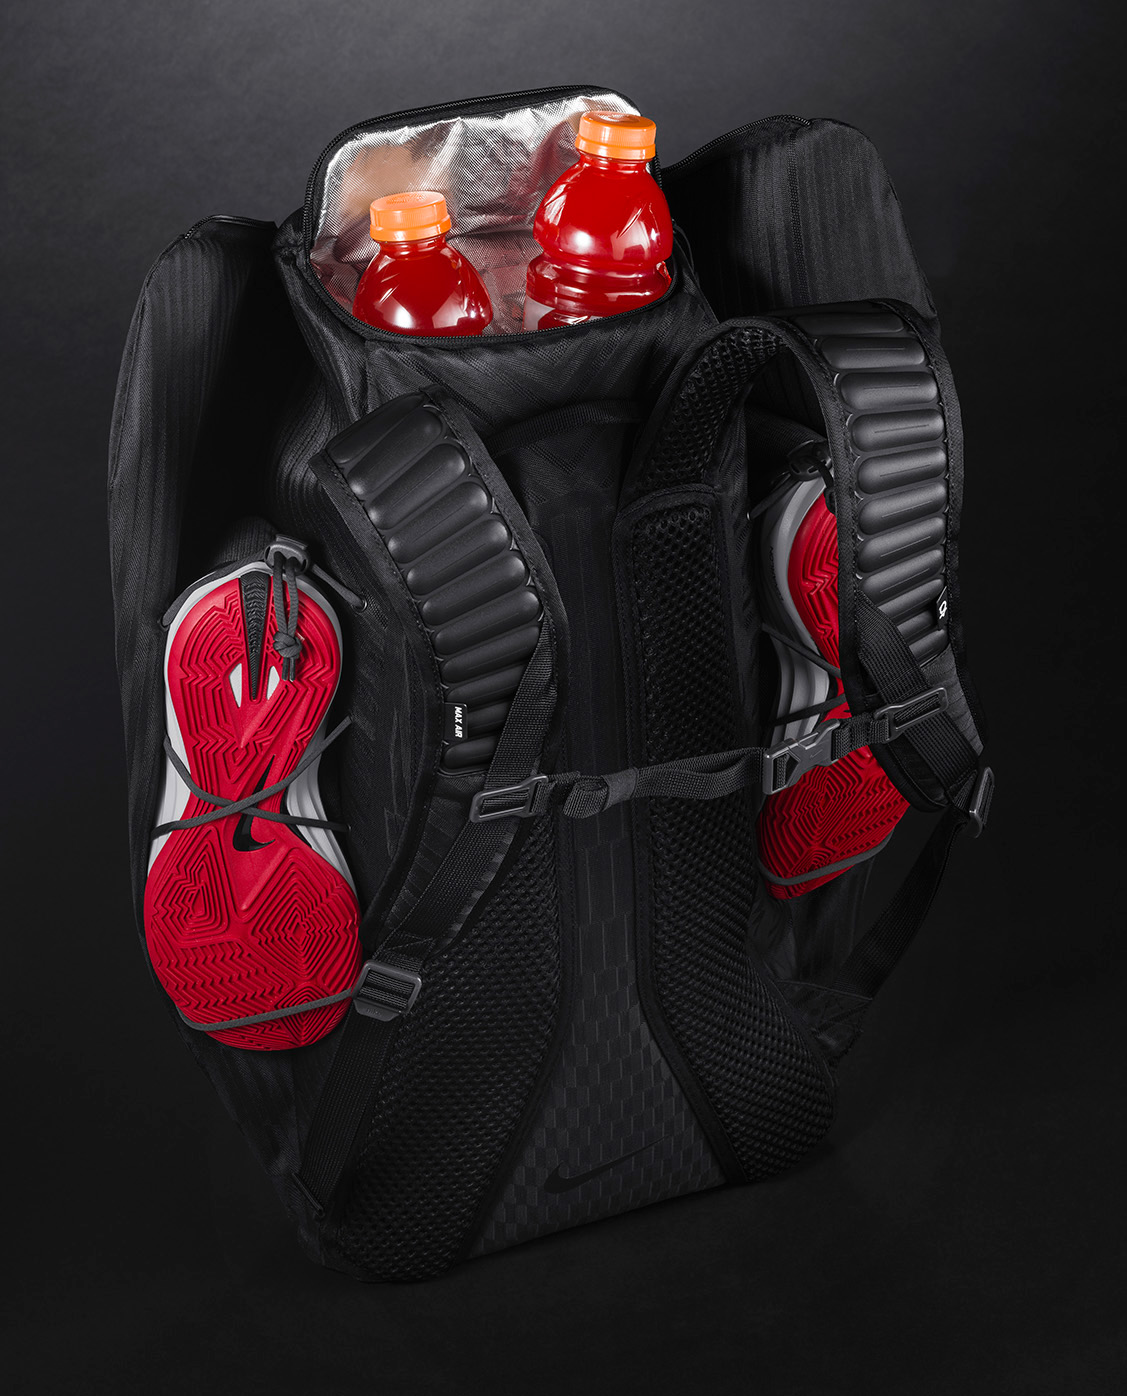 jacquard engineered jacquard soft goods design backpack soft goods kd Kevin Durant Backpack basketball basketball backpack Nike Backpack Backpack design